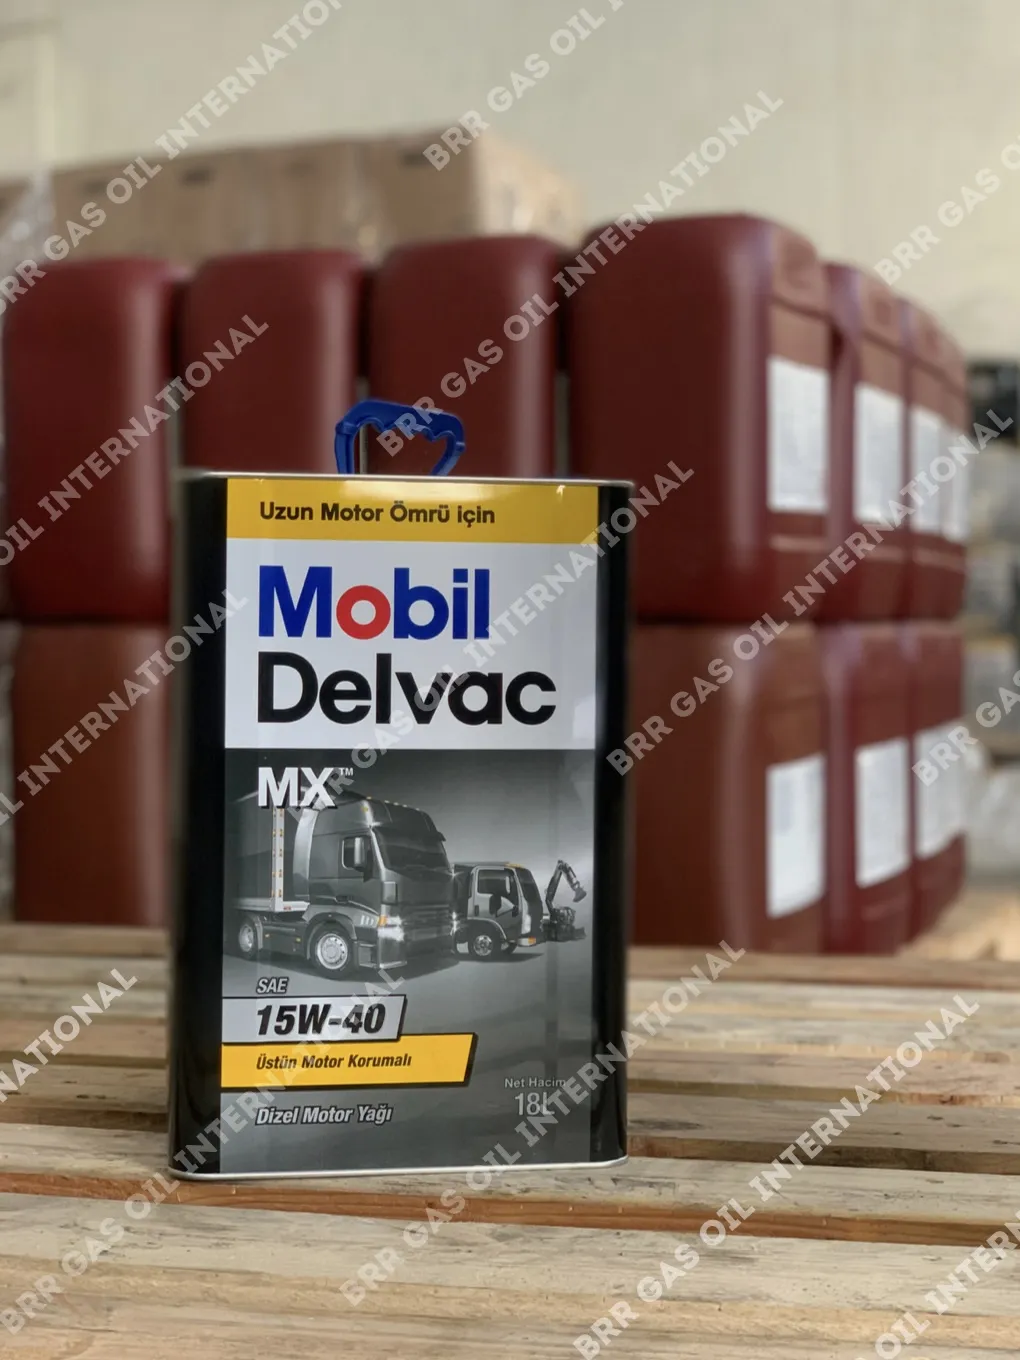 Mobil DelvacTM MX 15W-40 208L dvigatel moyi#1